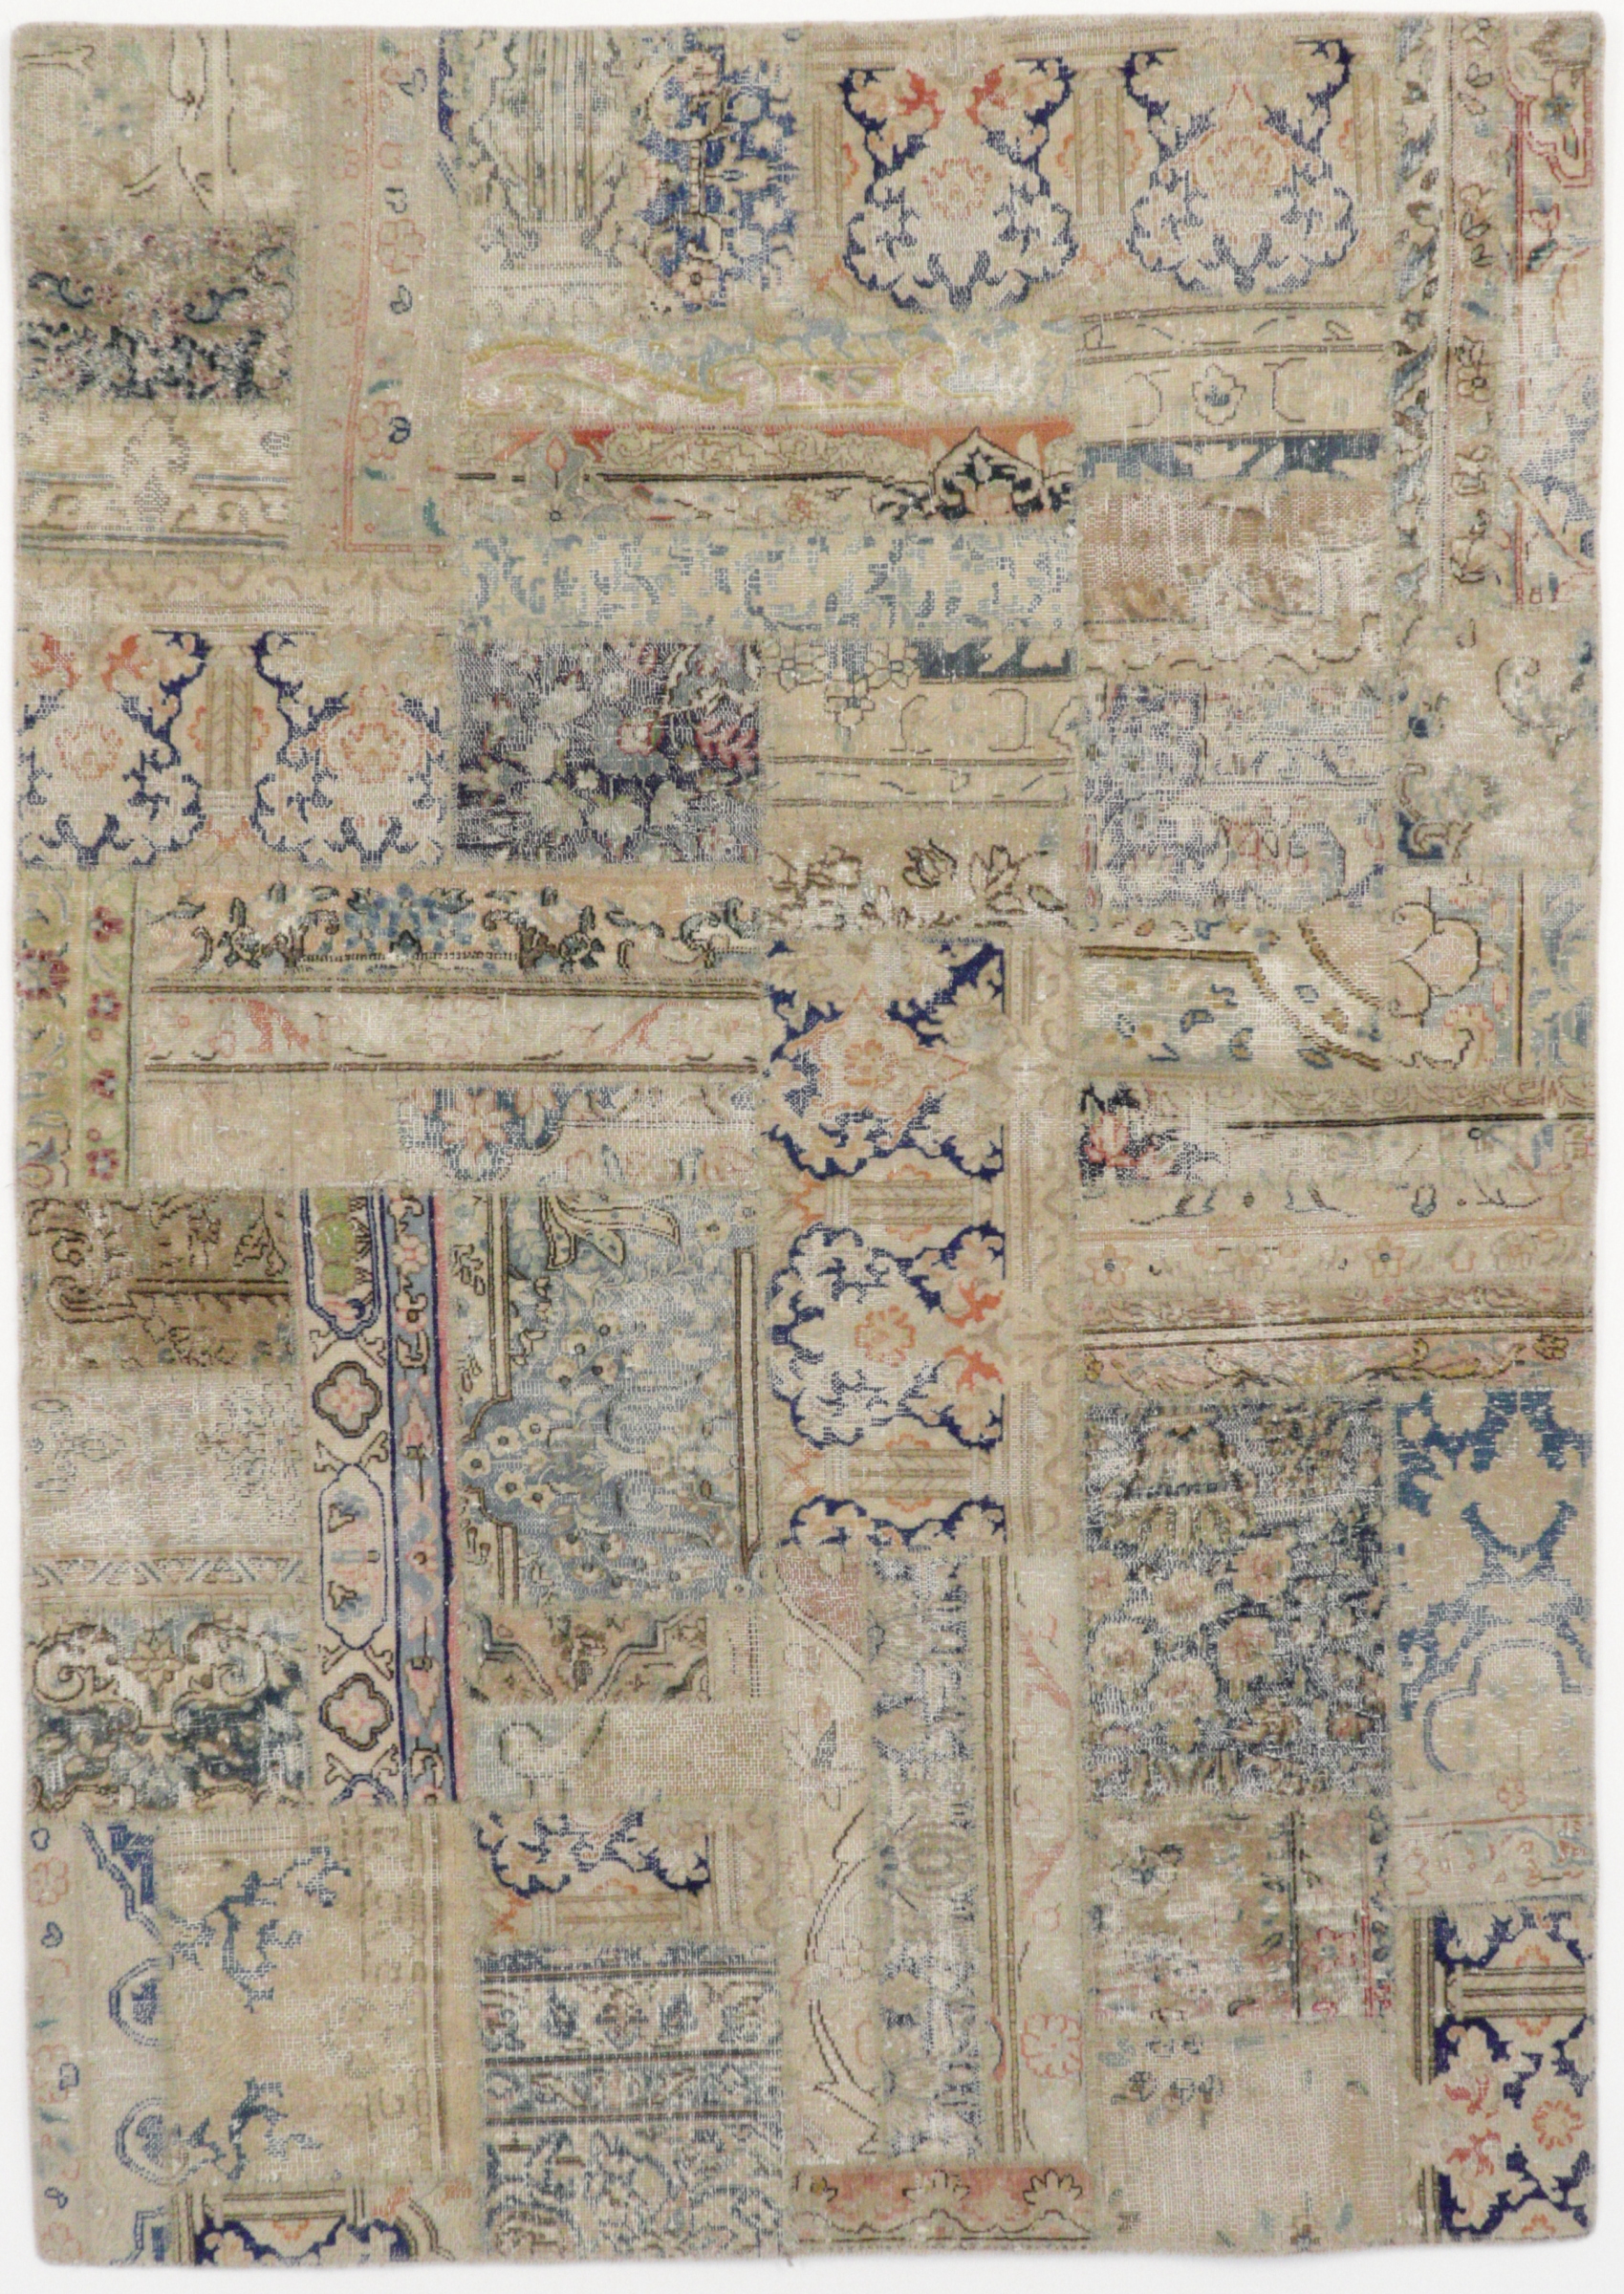 Feiner Patchworkteppich aus alten persischen Teppichen konfektioniert, pastellige Farben, Draufsicht